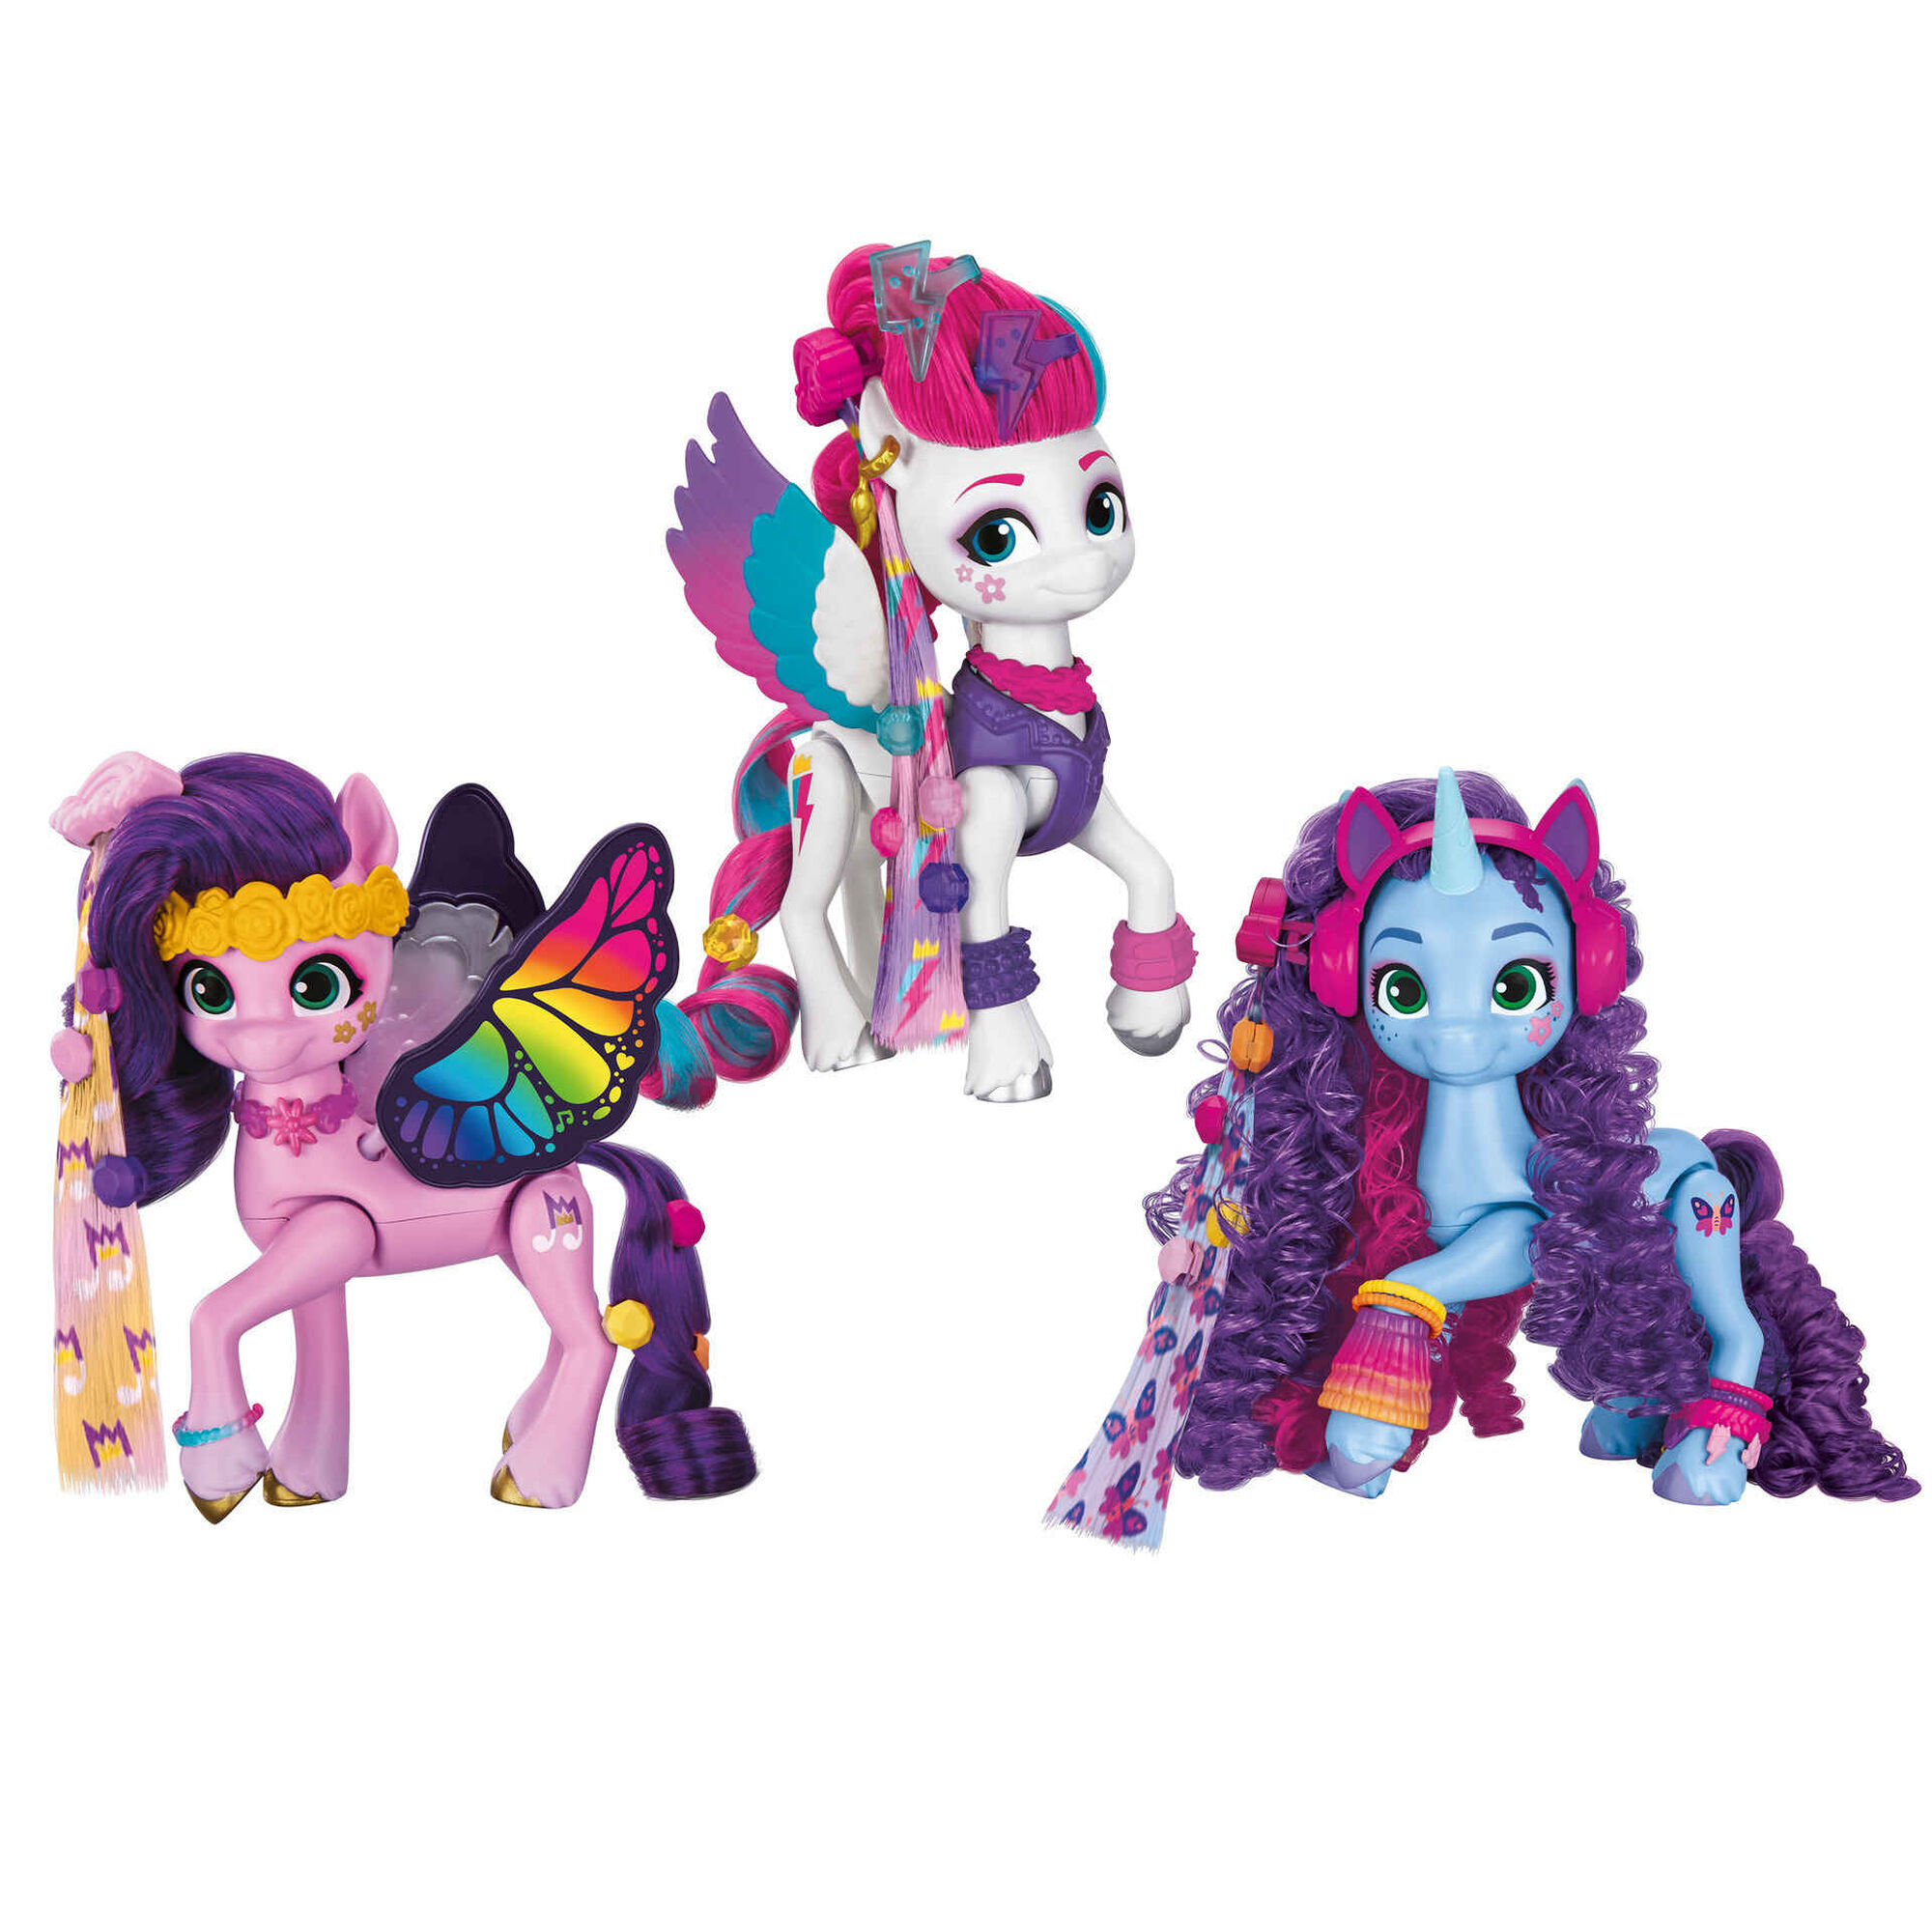 Novos personagens de My Little Pony revelados pela Hasbro e